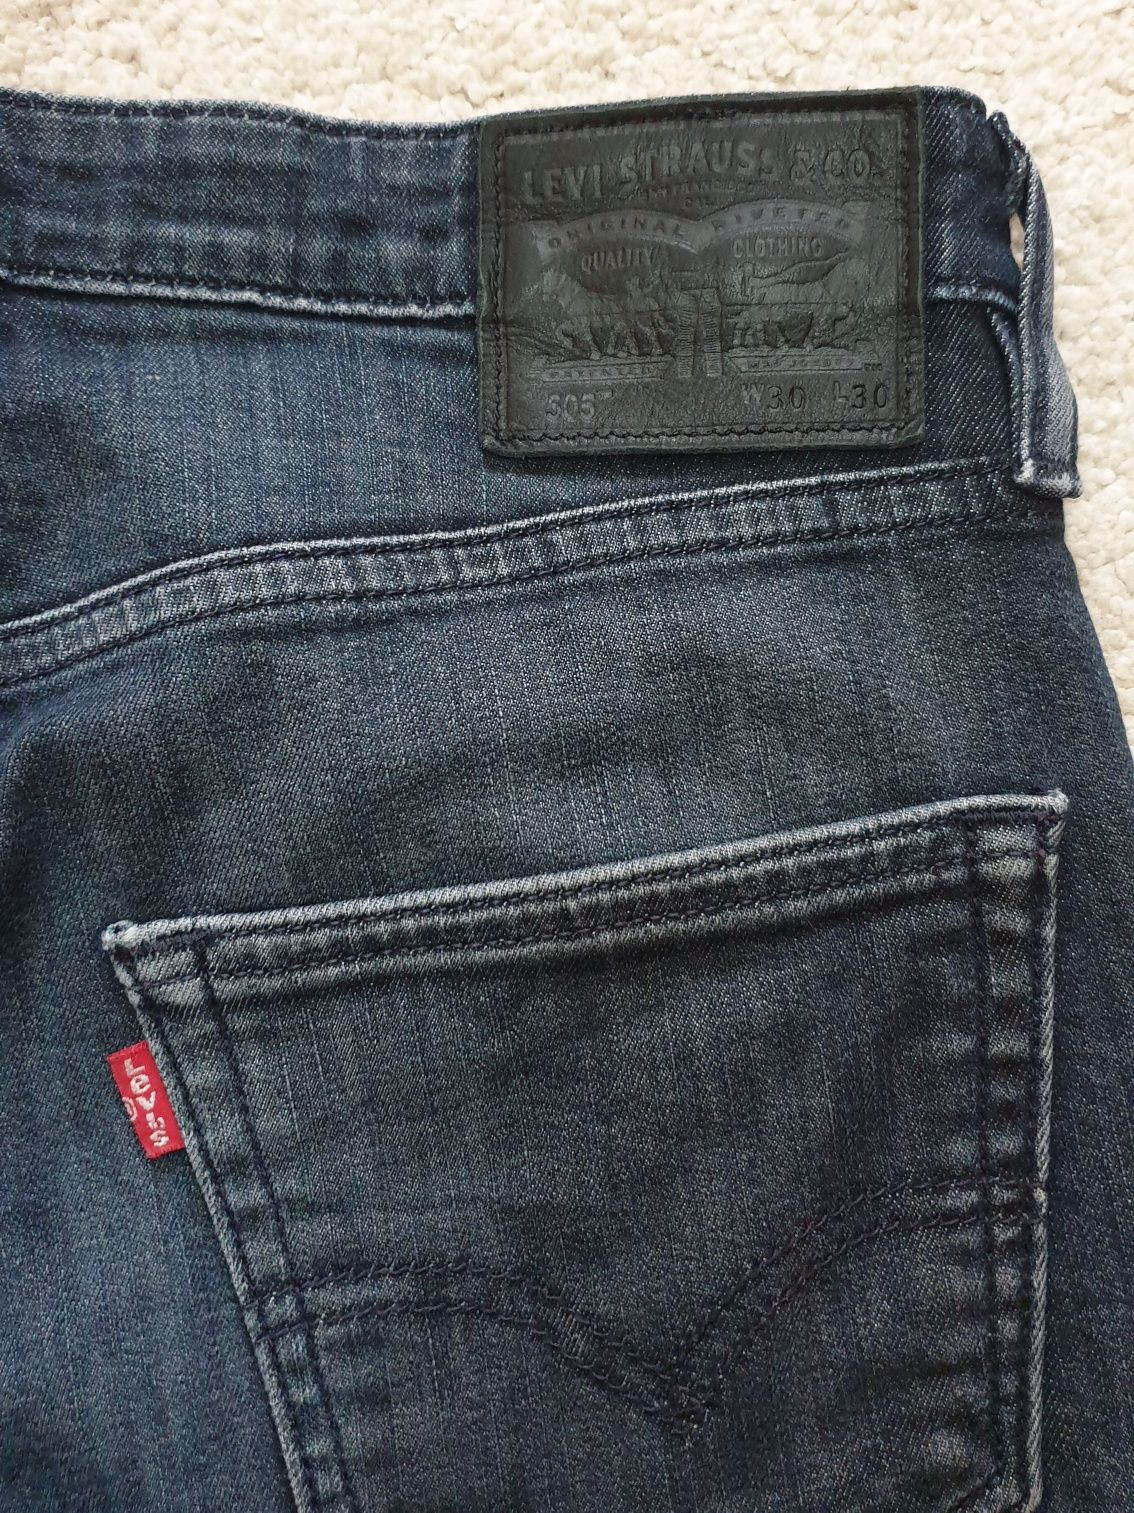 Spodnie męskie jeans LEVIS 505 rozm. 30 x 30